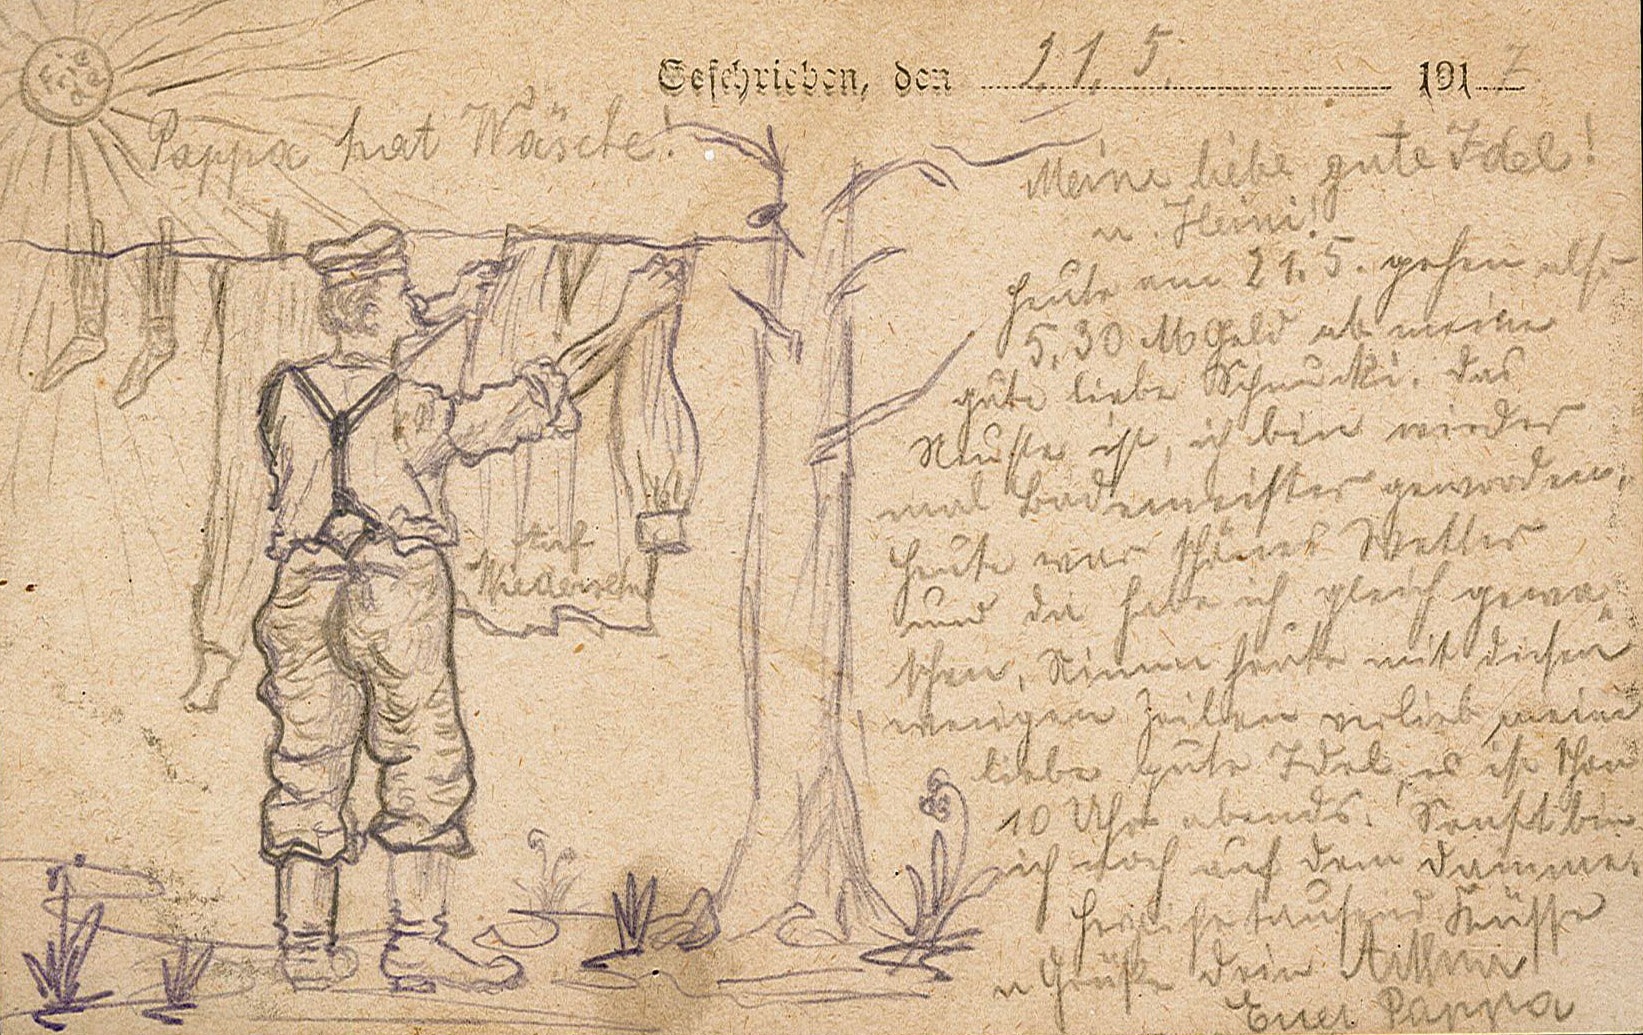 Feldpostkarte von Arthur Wunderlich an Ida Wunderlich, 21. Mai 1917 (Museum Wolmirstedt RR-F)